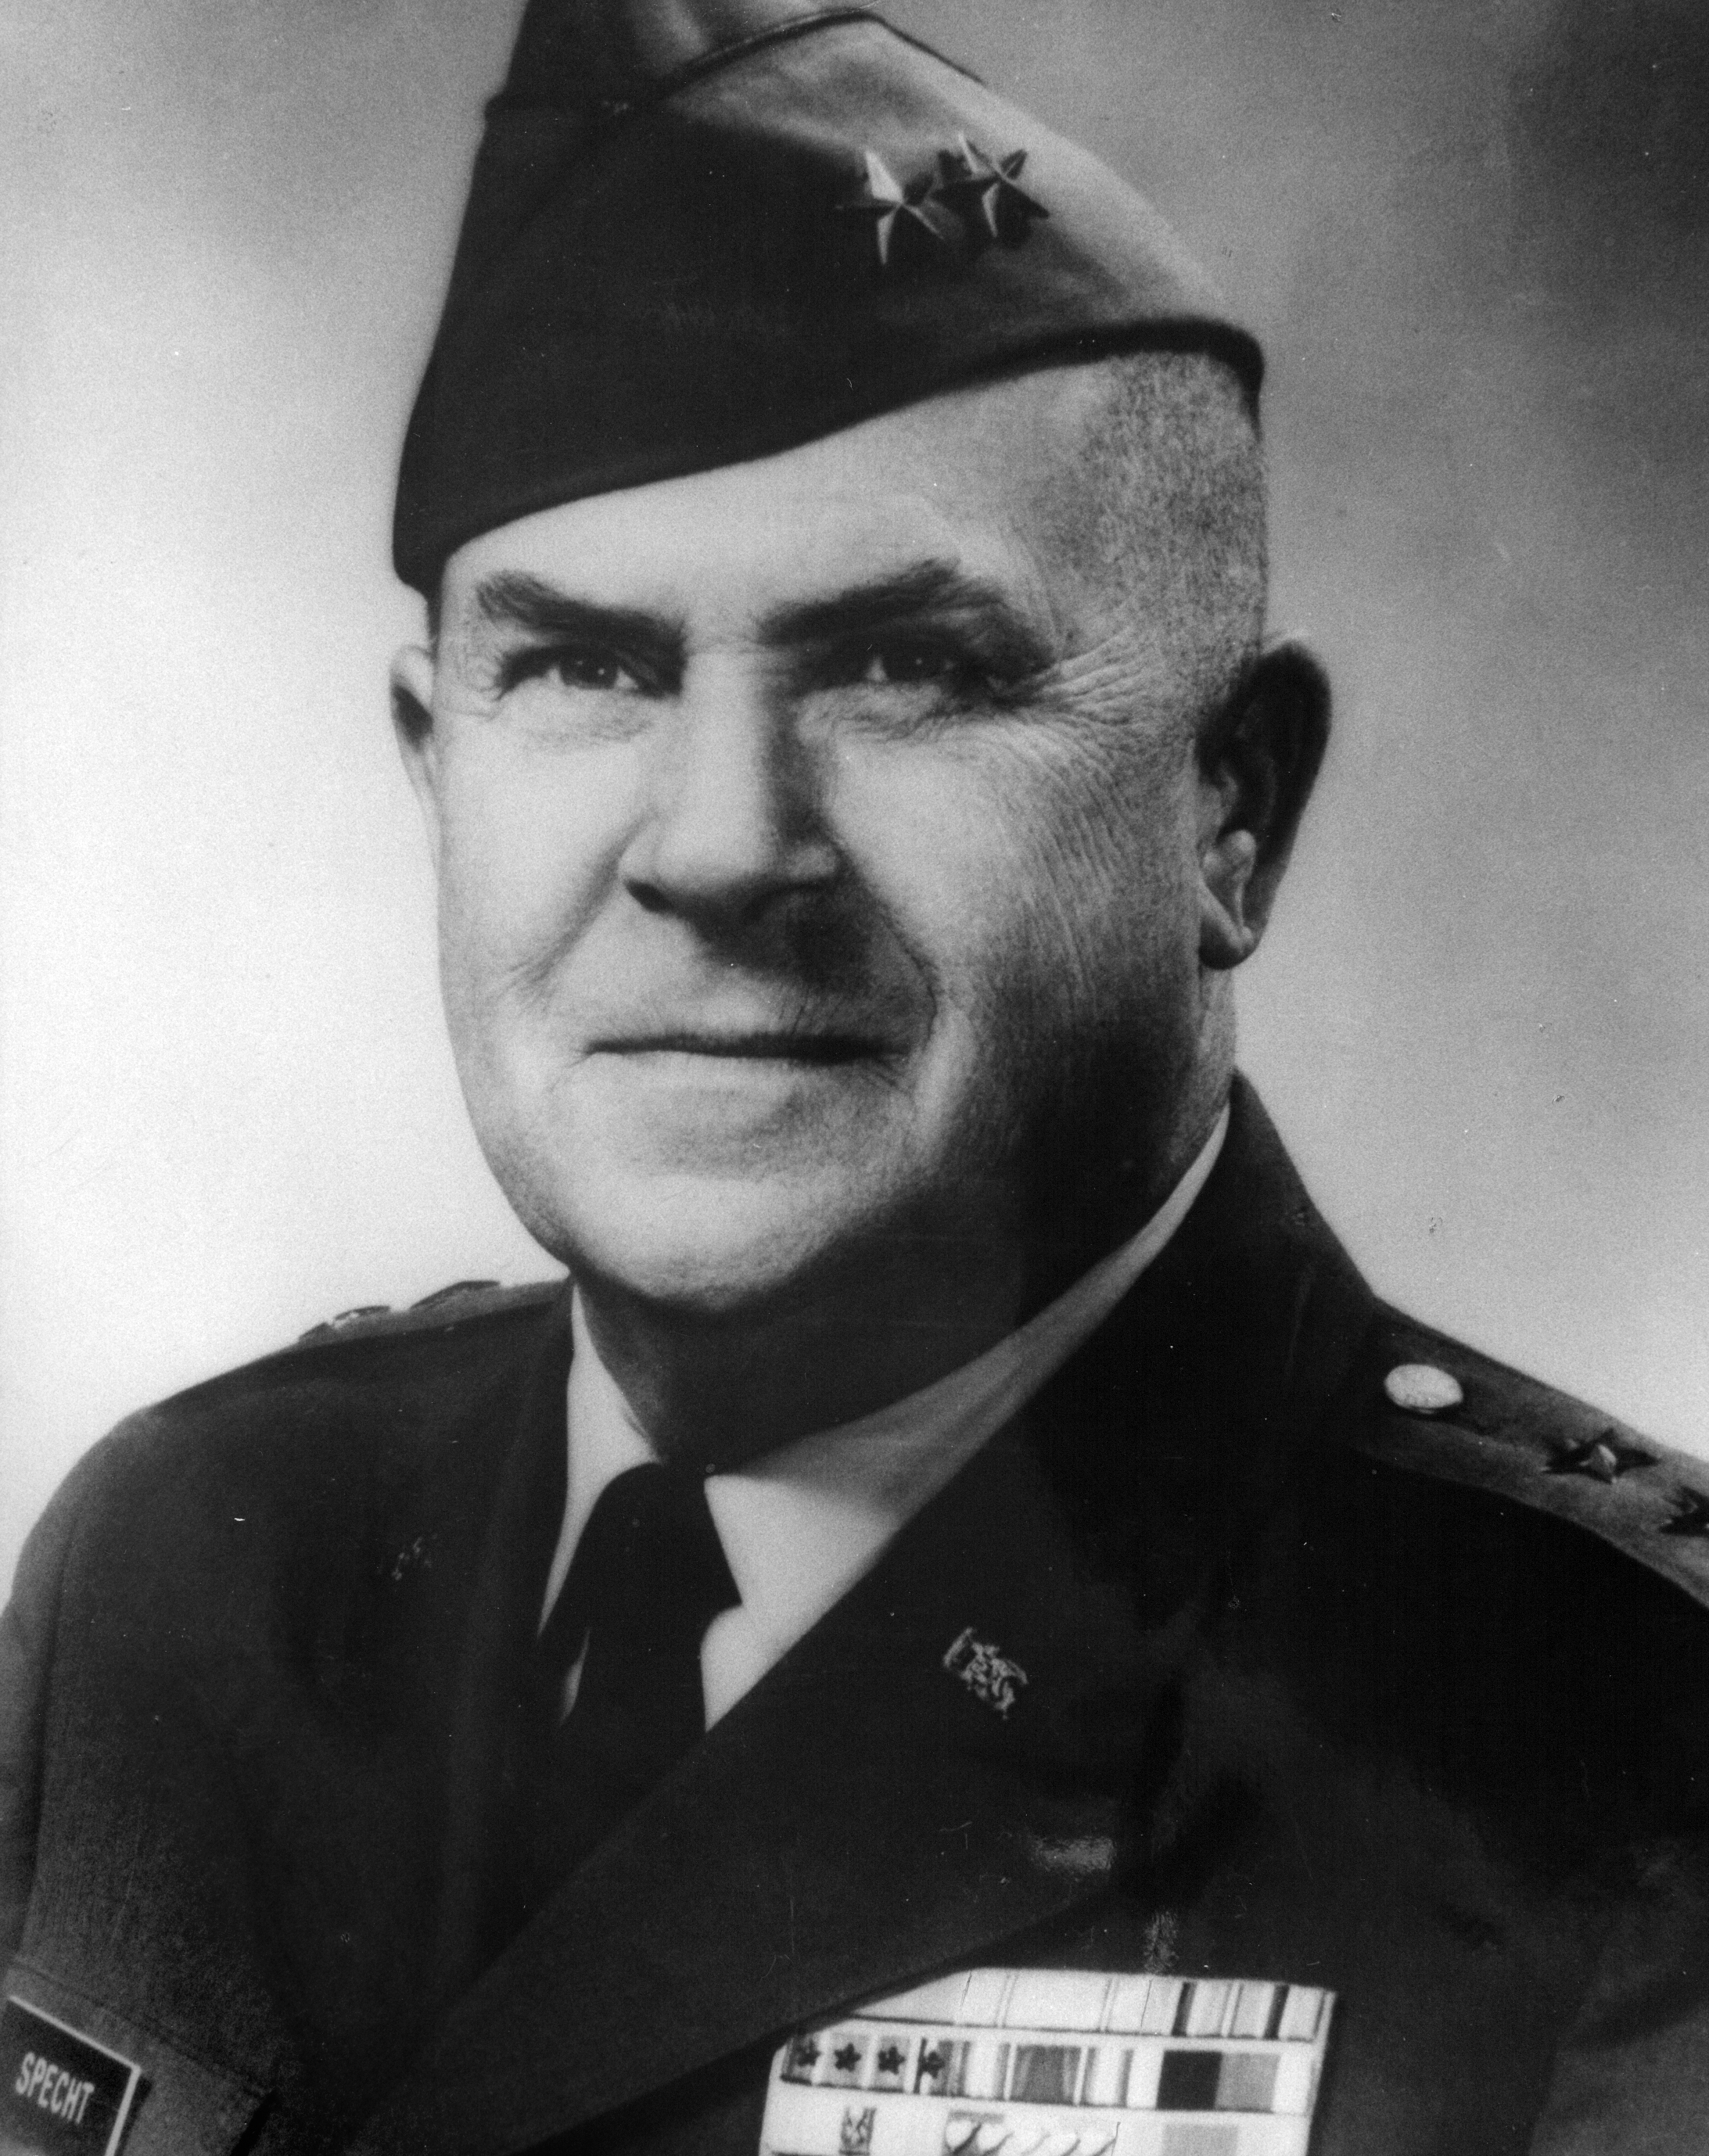 Major General Max H. Specht